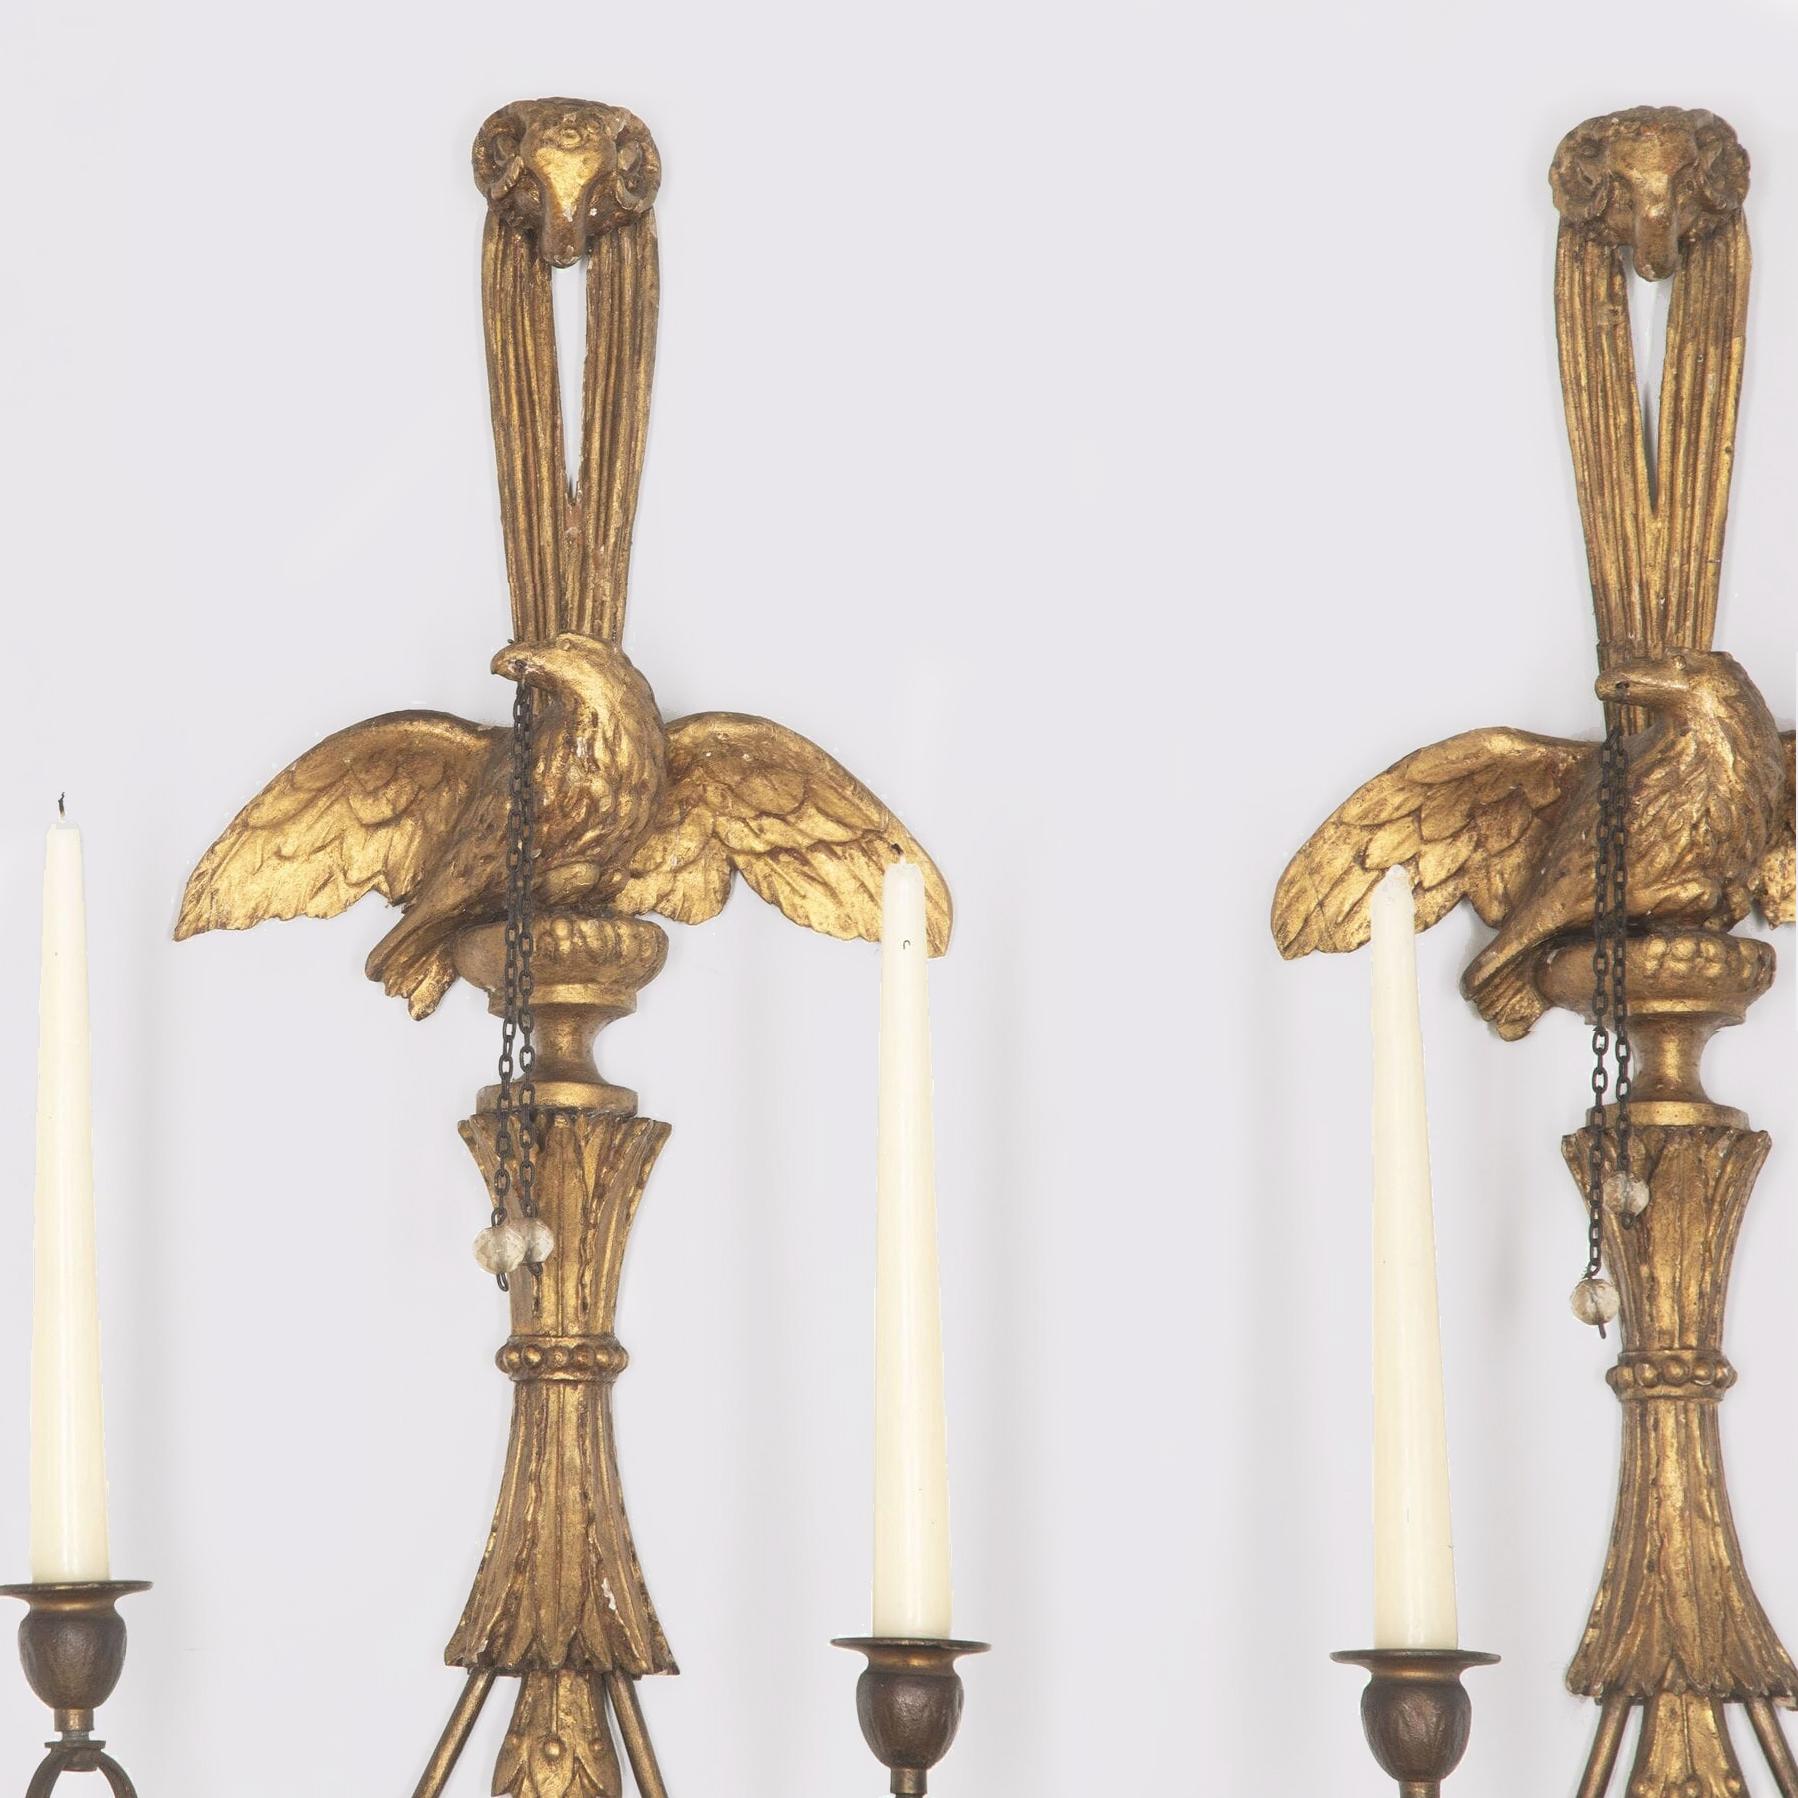 Paire d'appliques à deux branches finement sculptées et dorées de style George III. 

La tête de bélier sculptée surplombe un aigle aux ailes déployées qui tient une chaîne avec une perle de cristal taillé. 

Les accoudoirs en métal doré sont